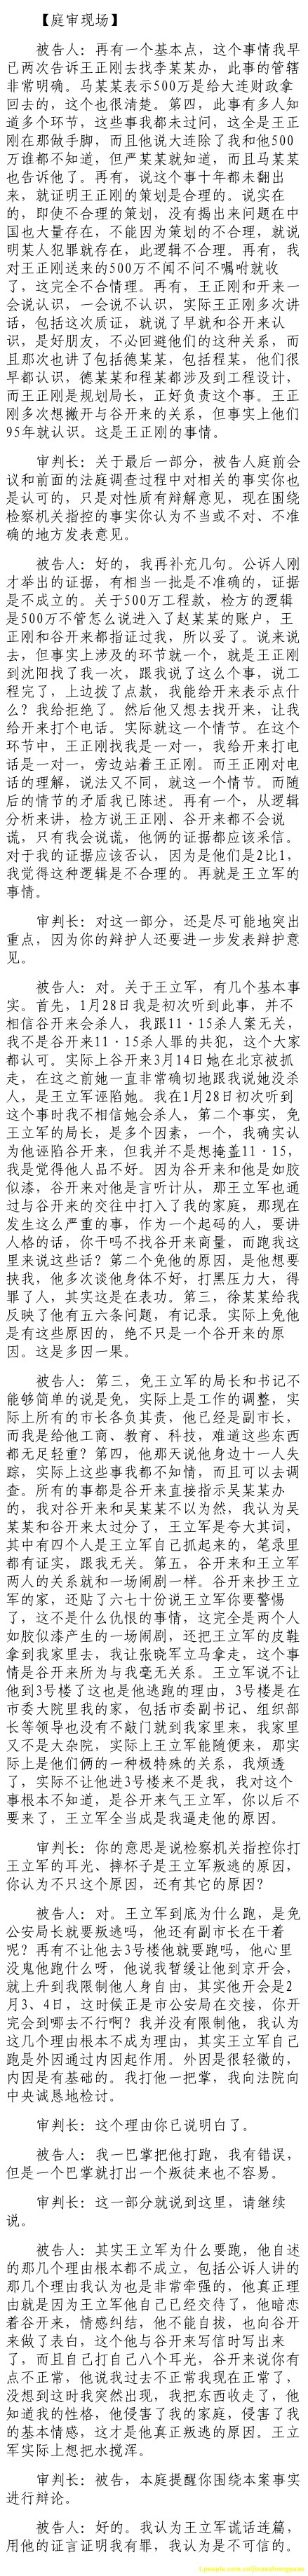 济南市中级法院官方微博公布的8月26日庭审现场记录（4）